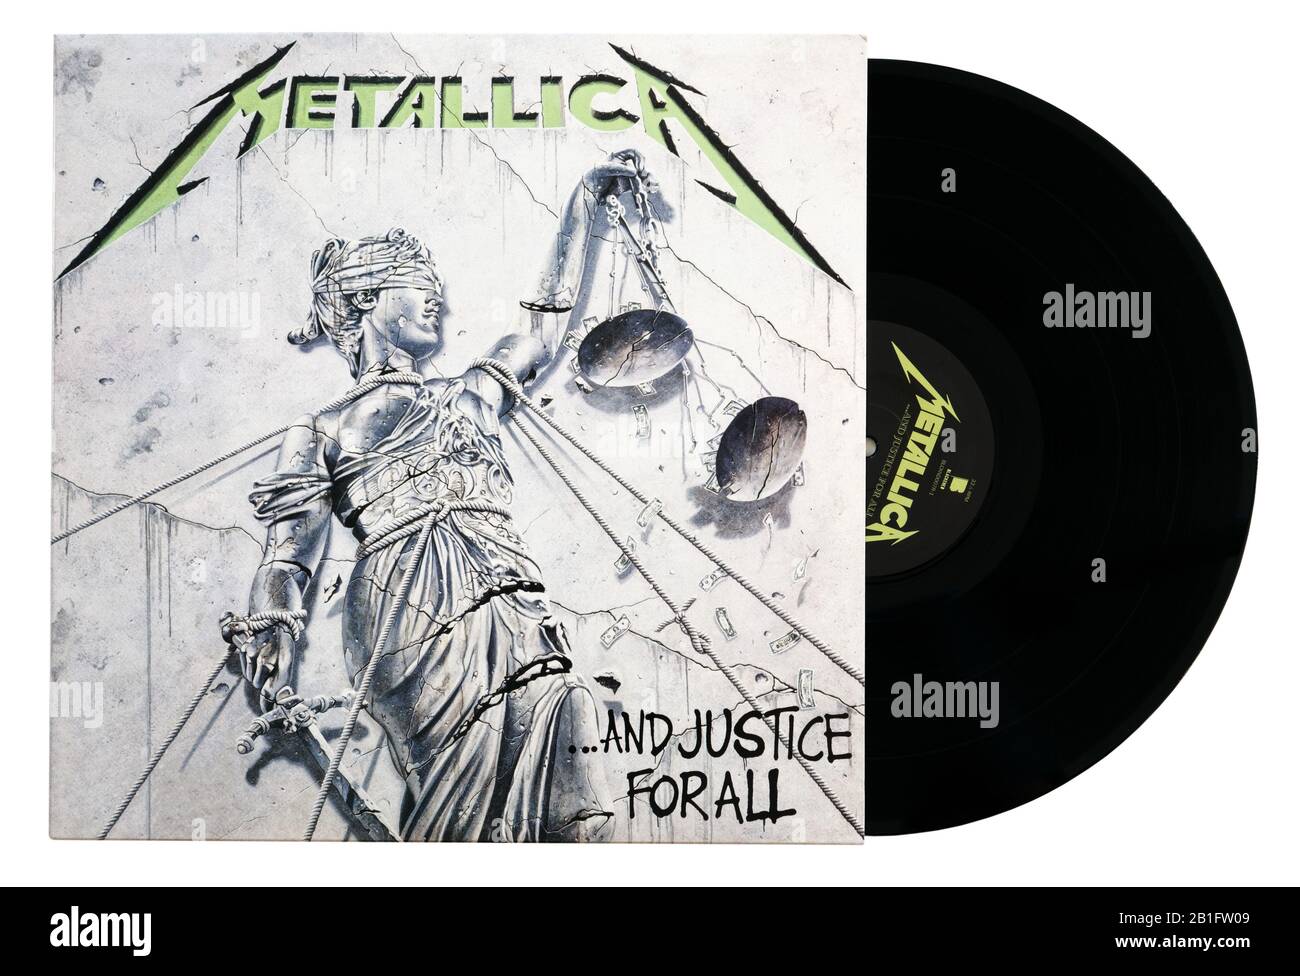 Álbum clásico de Heavy Metal Y Justicia Para todos de Metallica en